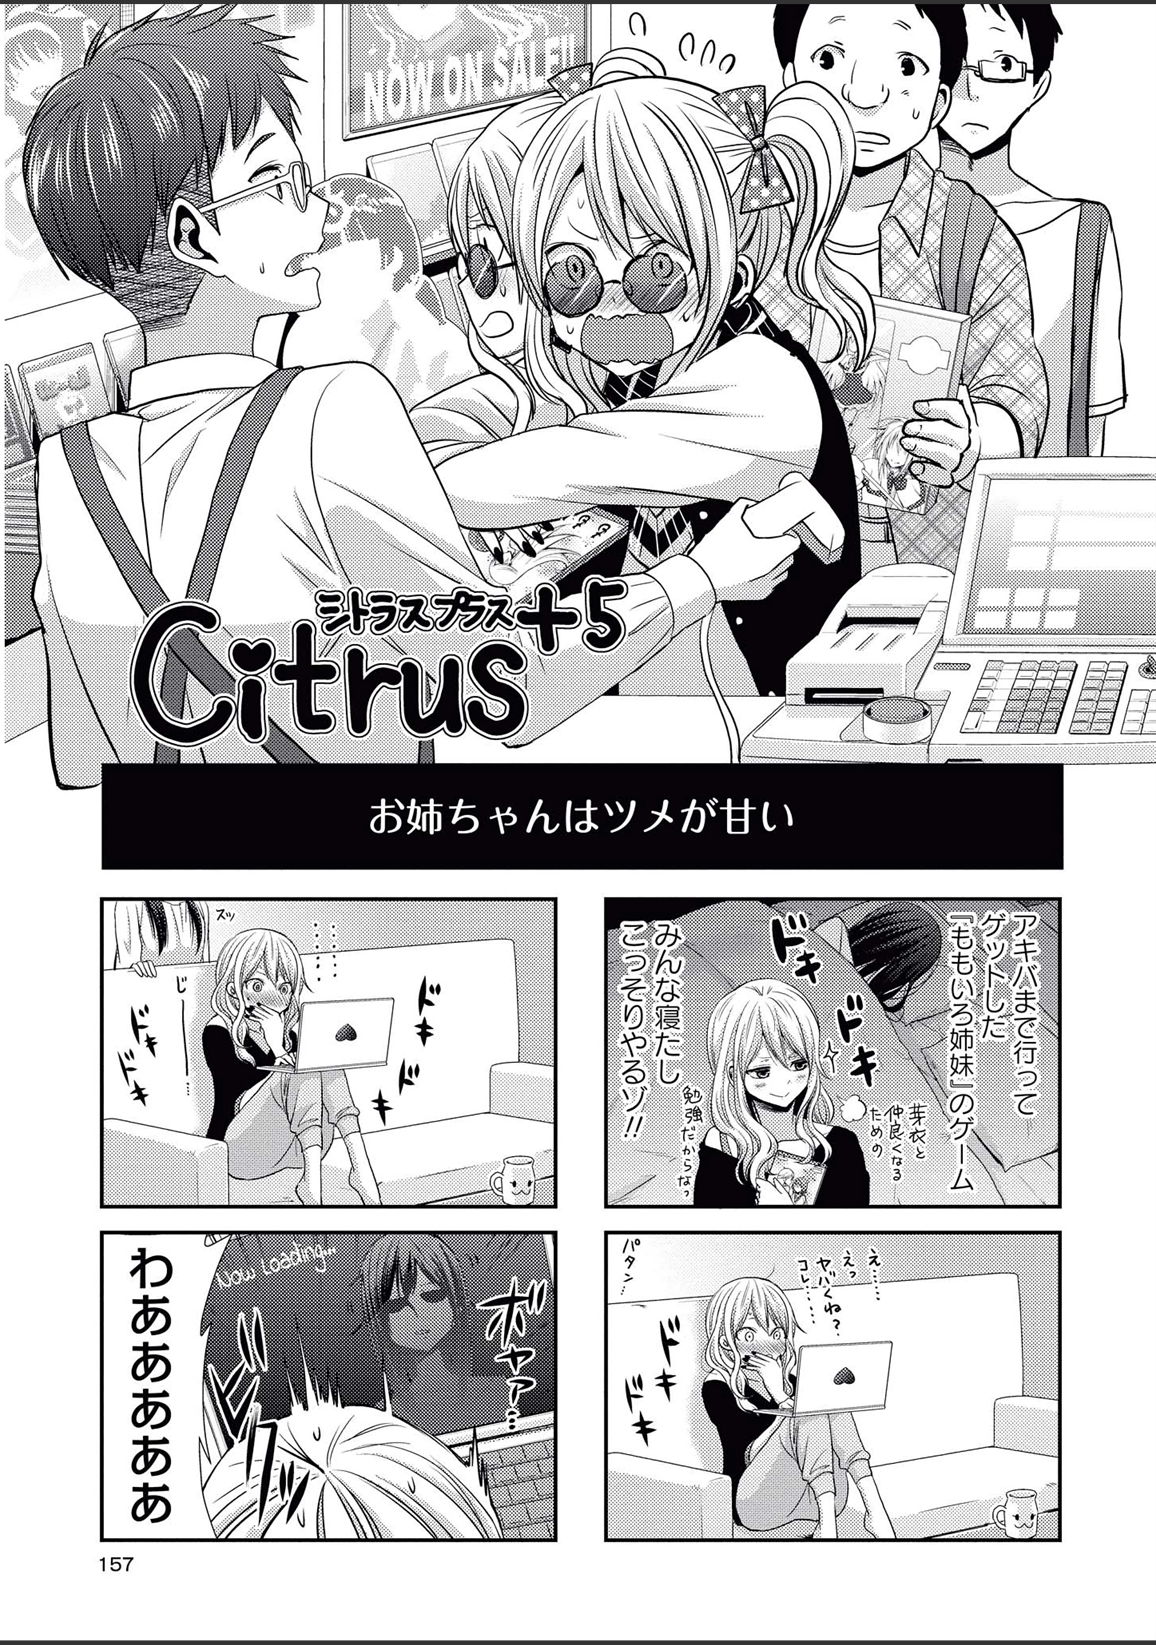 Manga Like citrus Comic Anthology